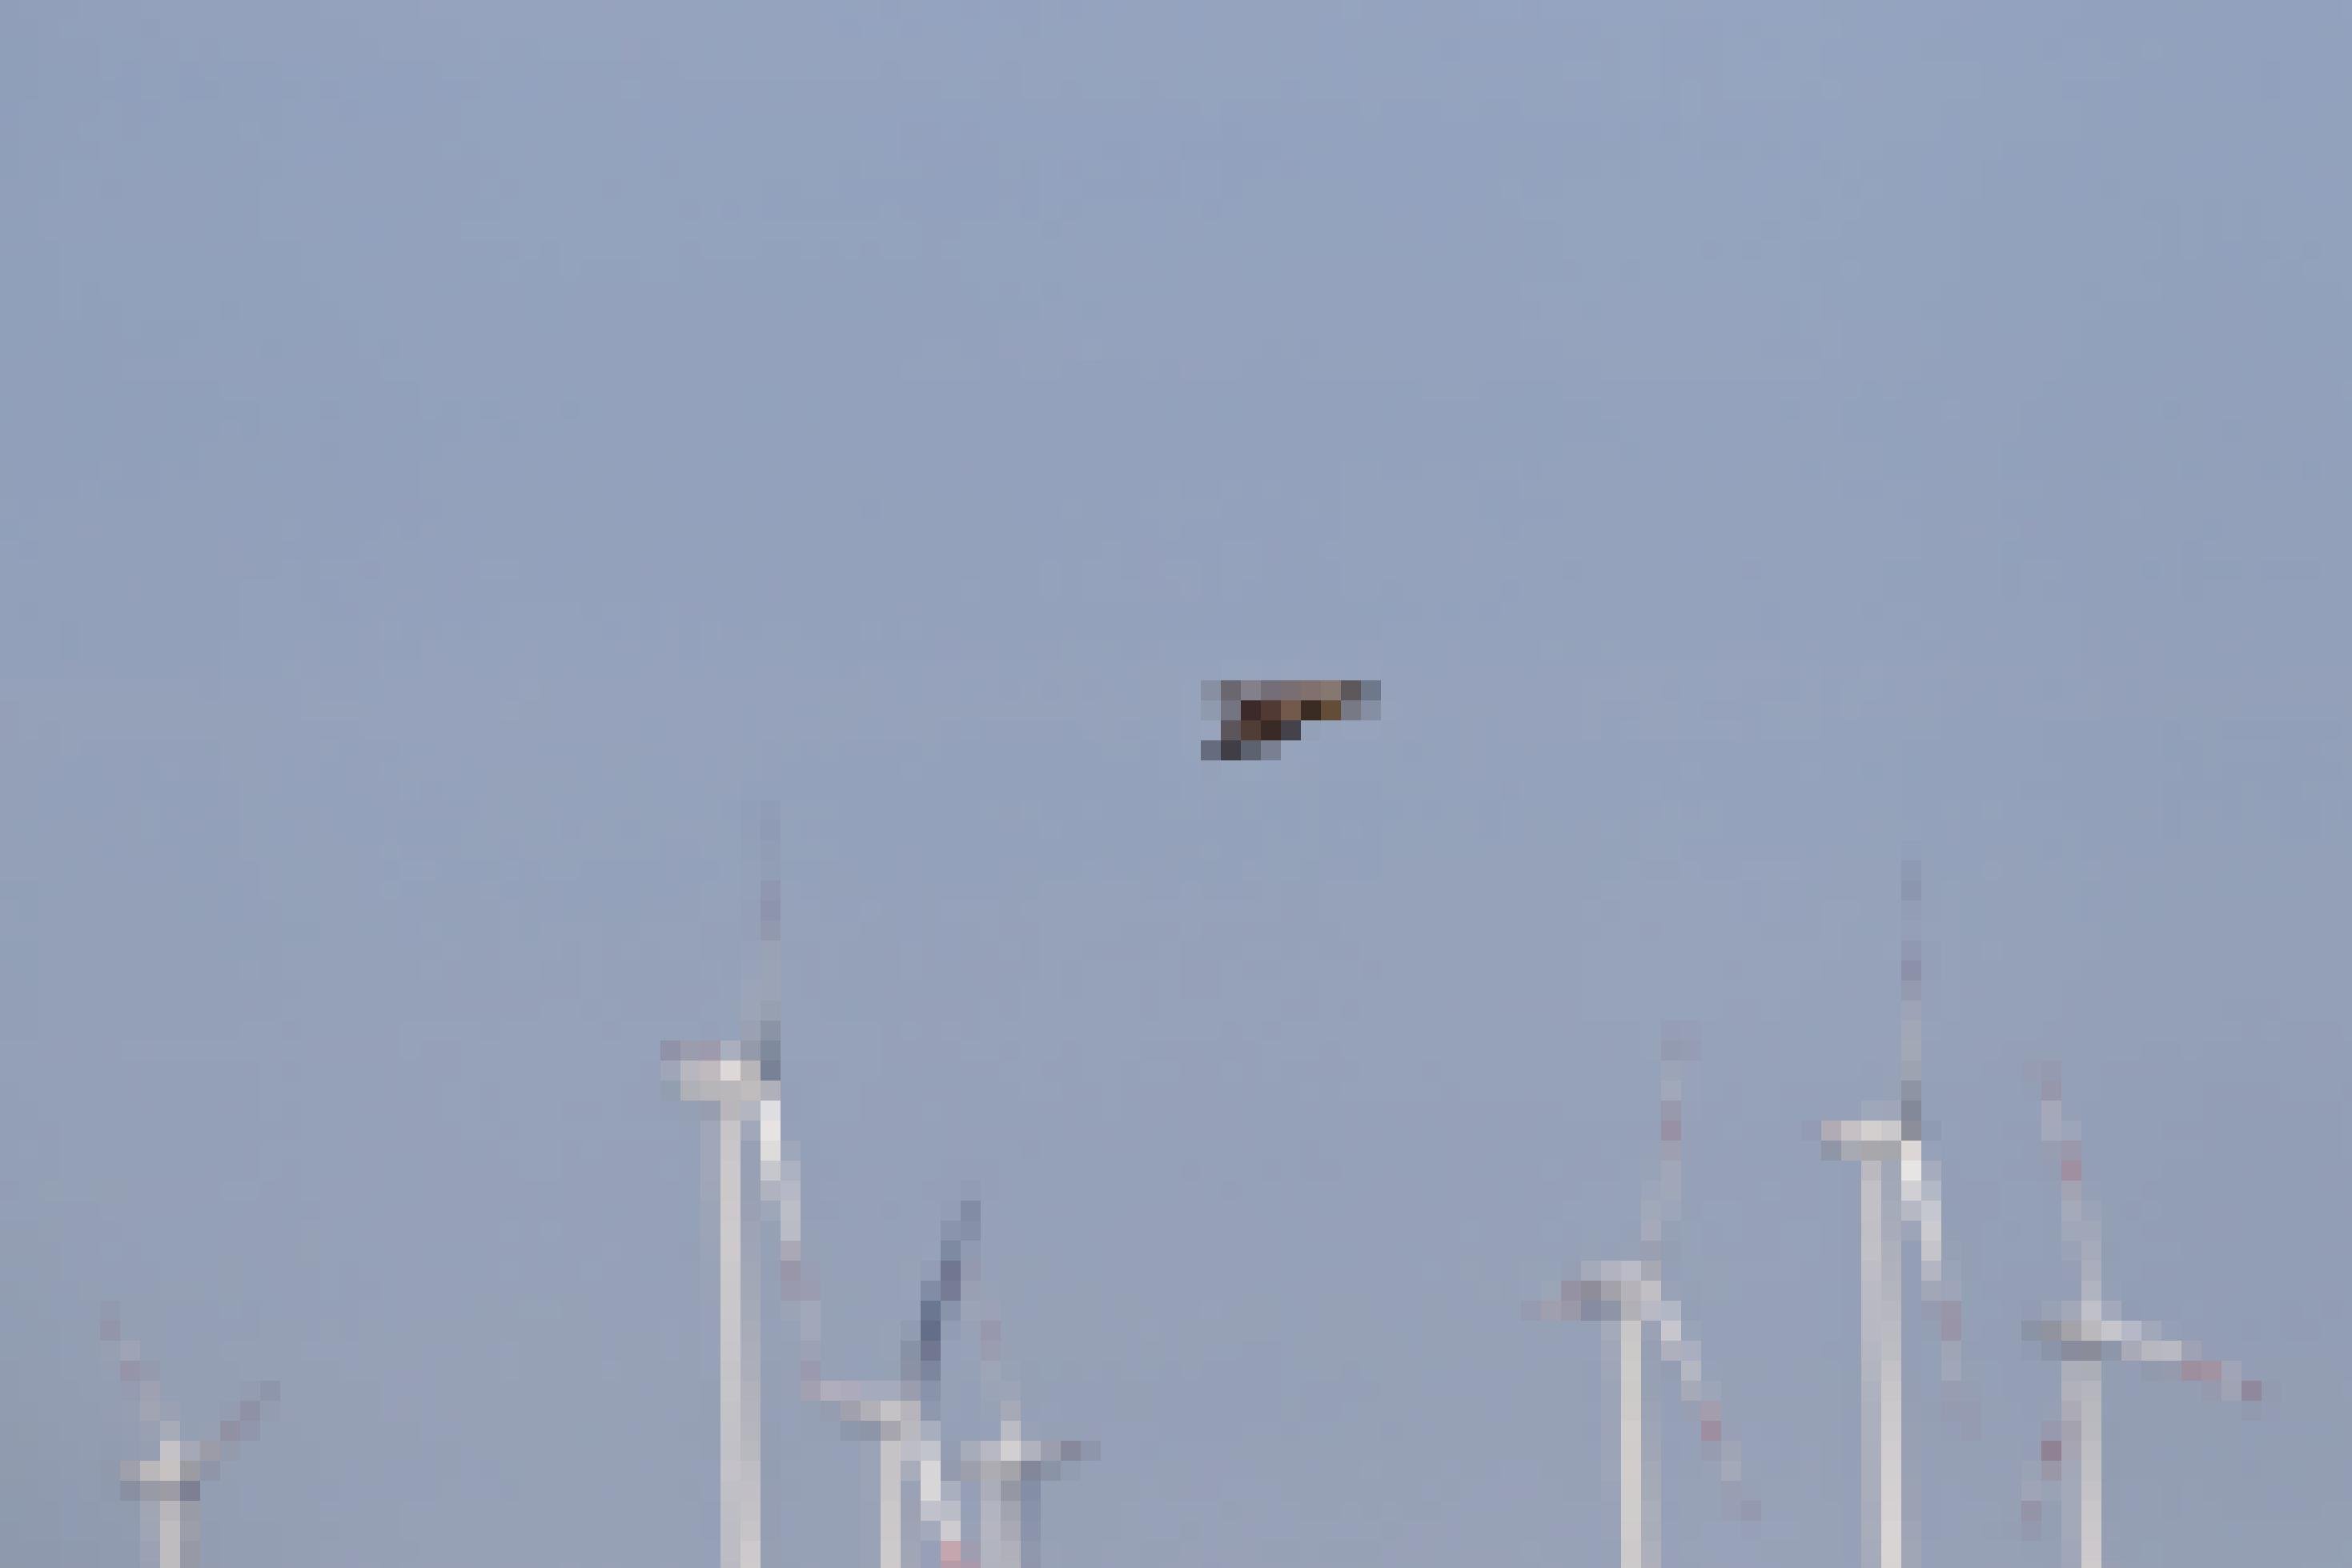 Ein Schreiadler fliegt durch ein Meer von Windkraftanlagen.